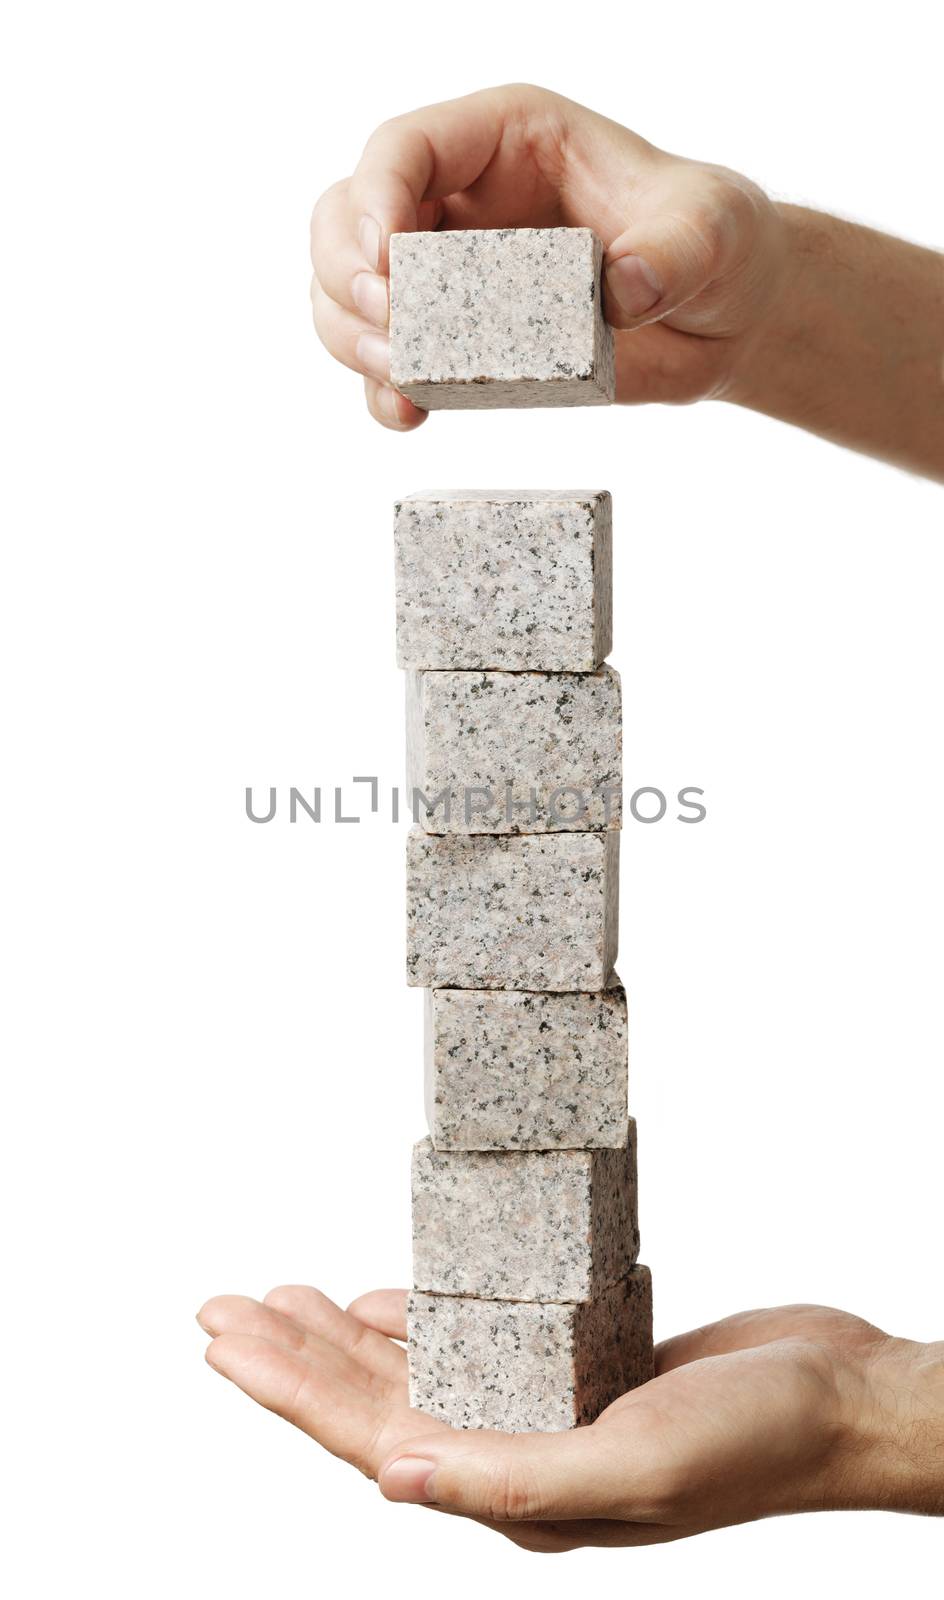 Man stacking granite rock blocks in his hand.